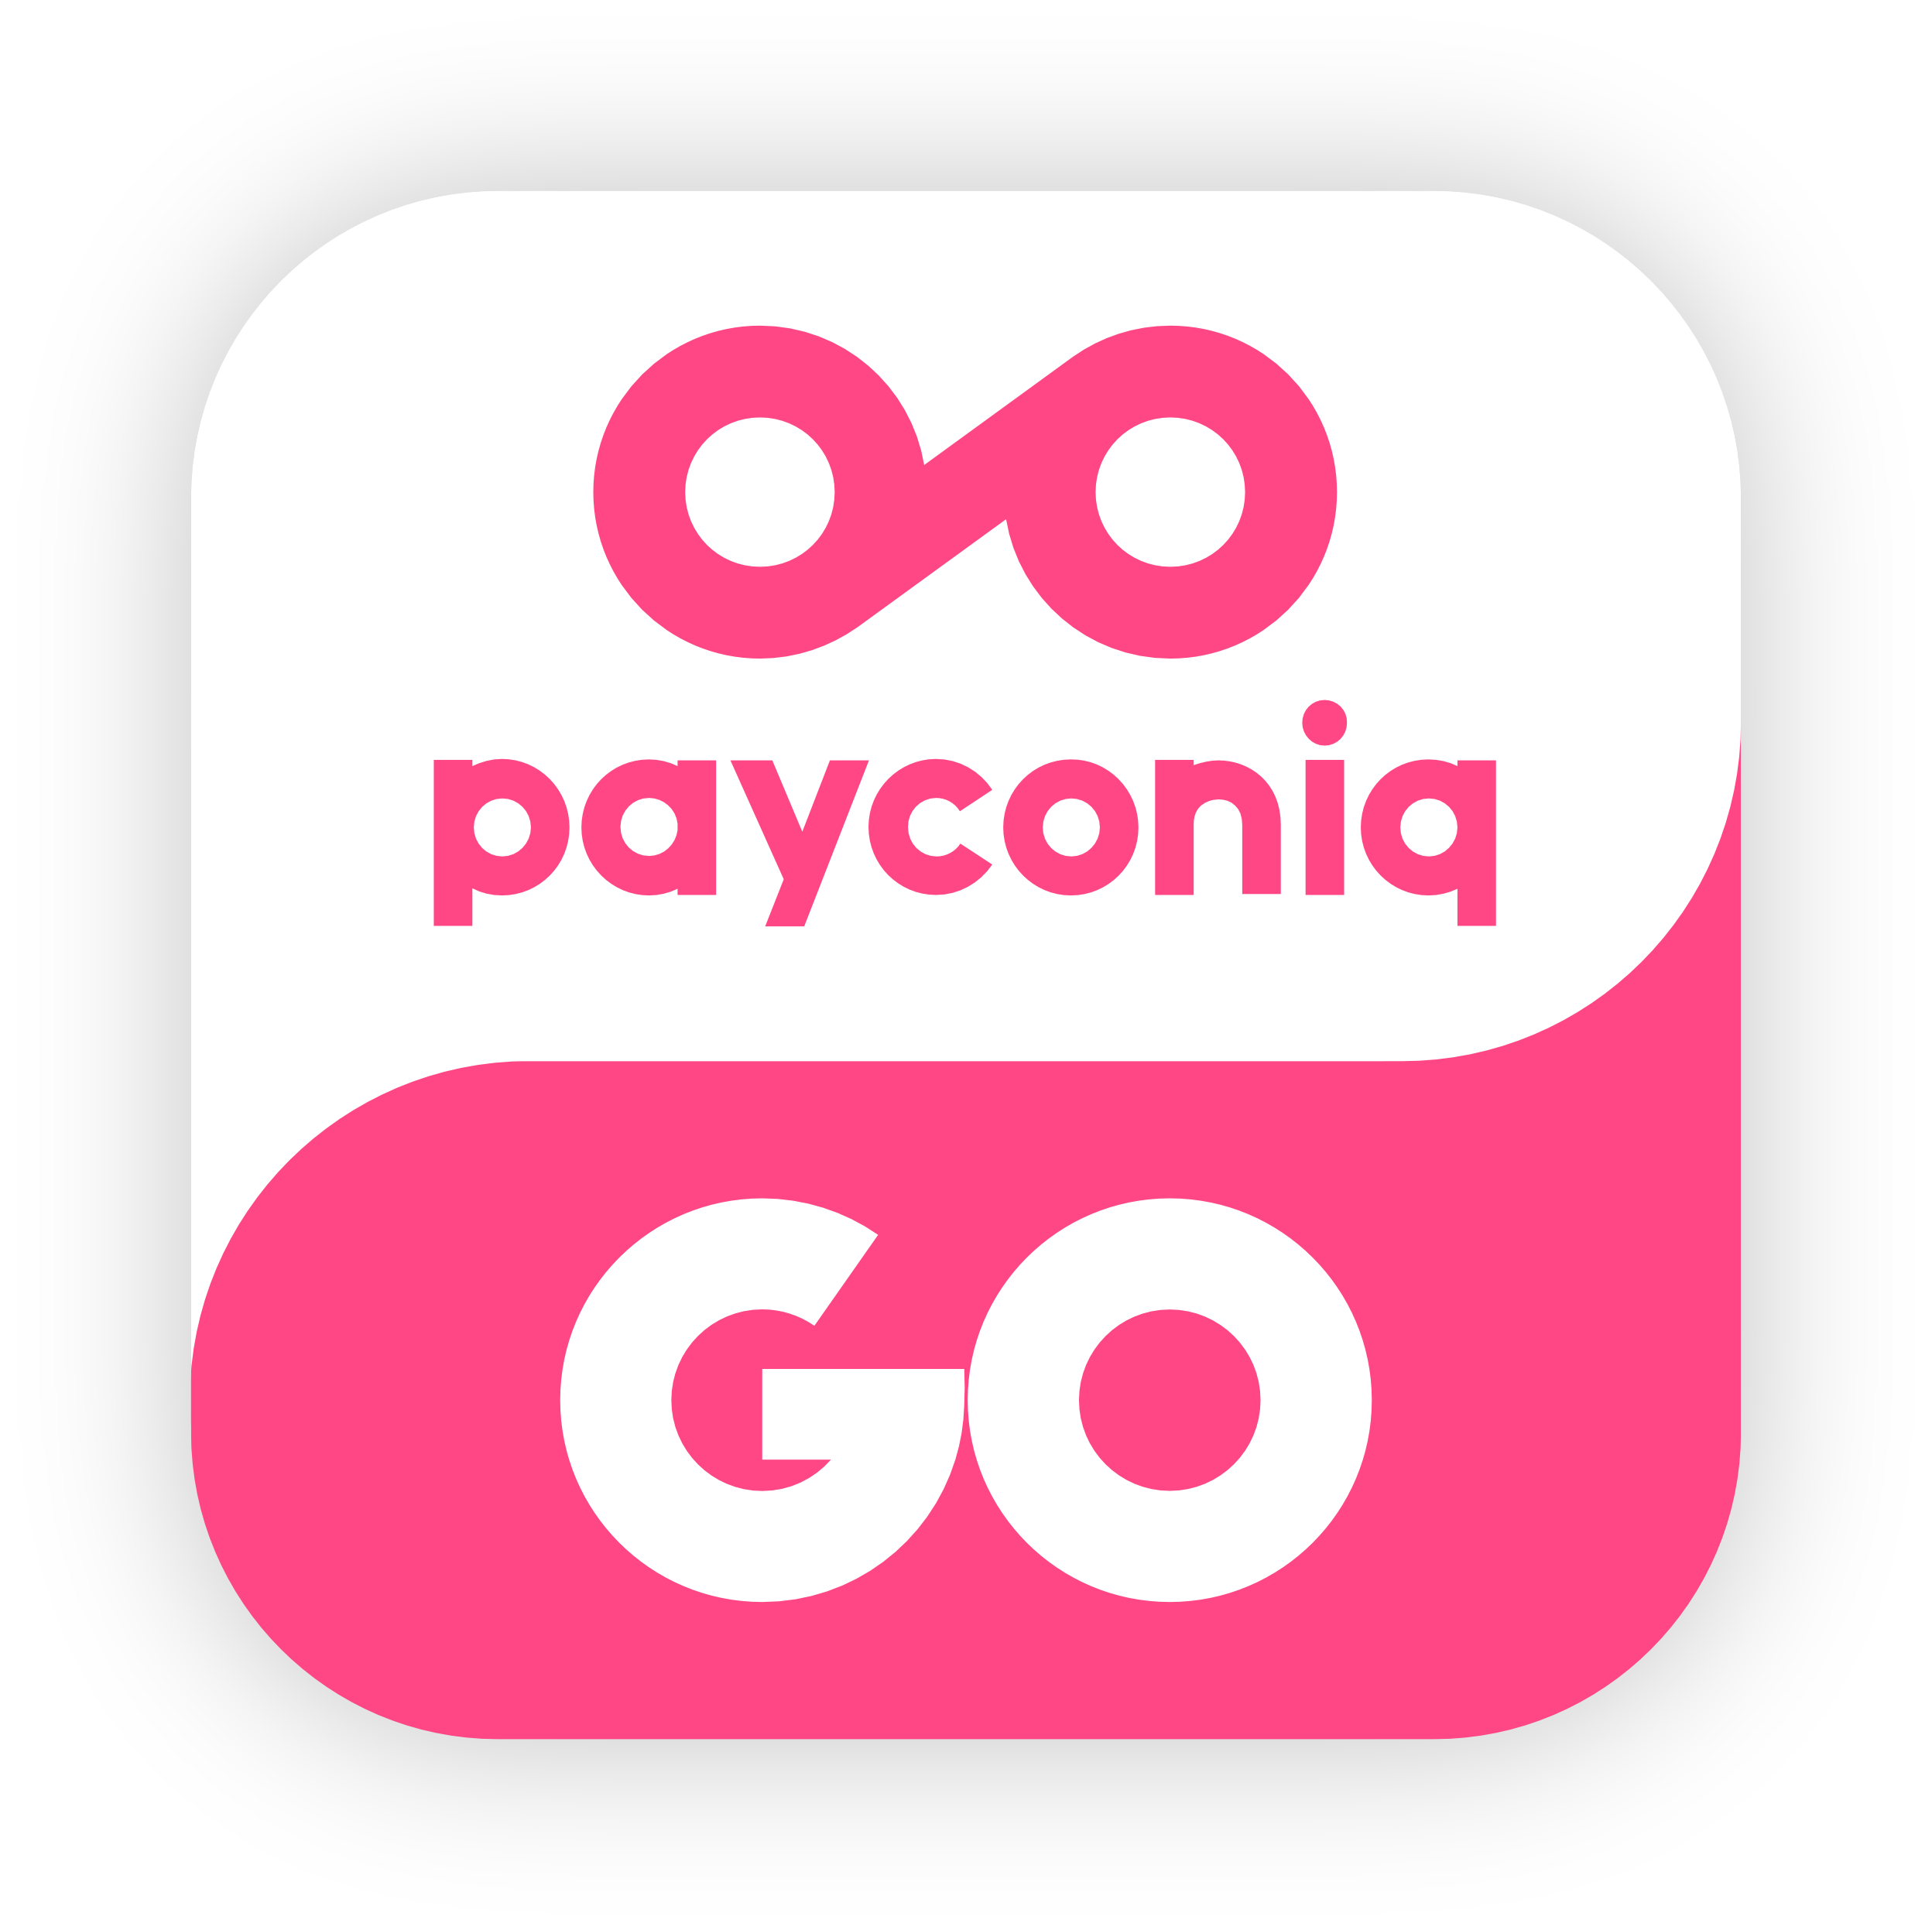 Payconiq GO